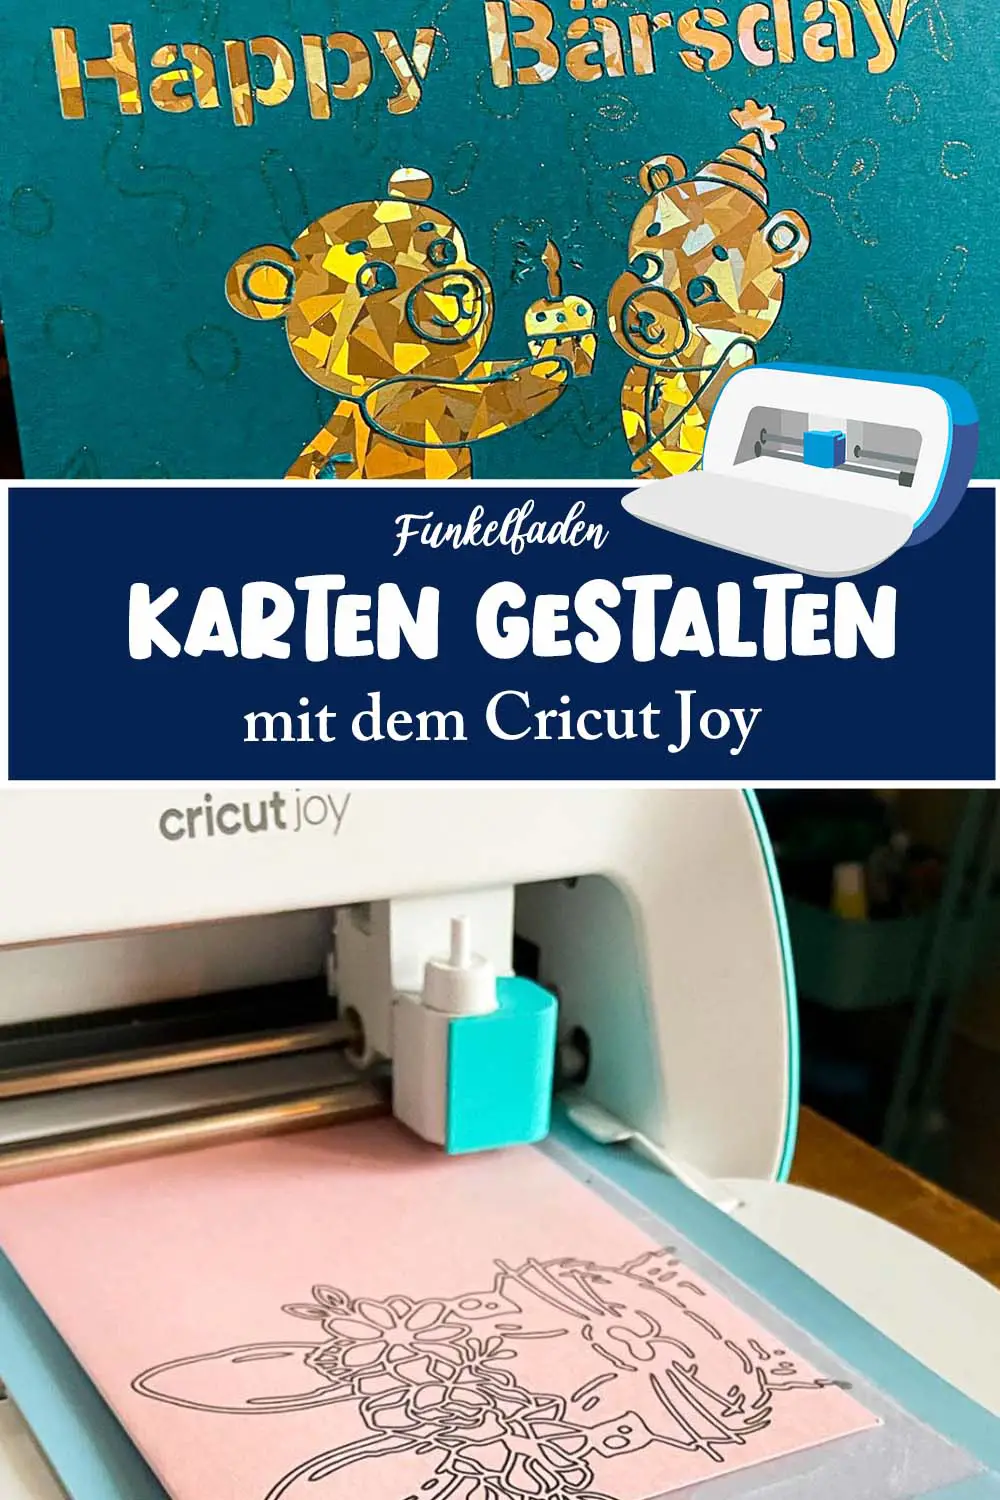 Karten gestalten mit dem Cricut Joy